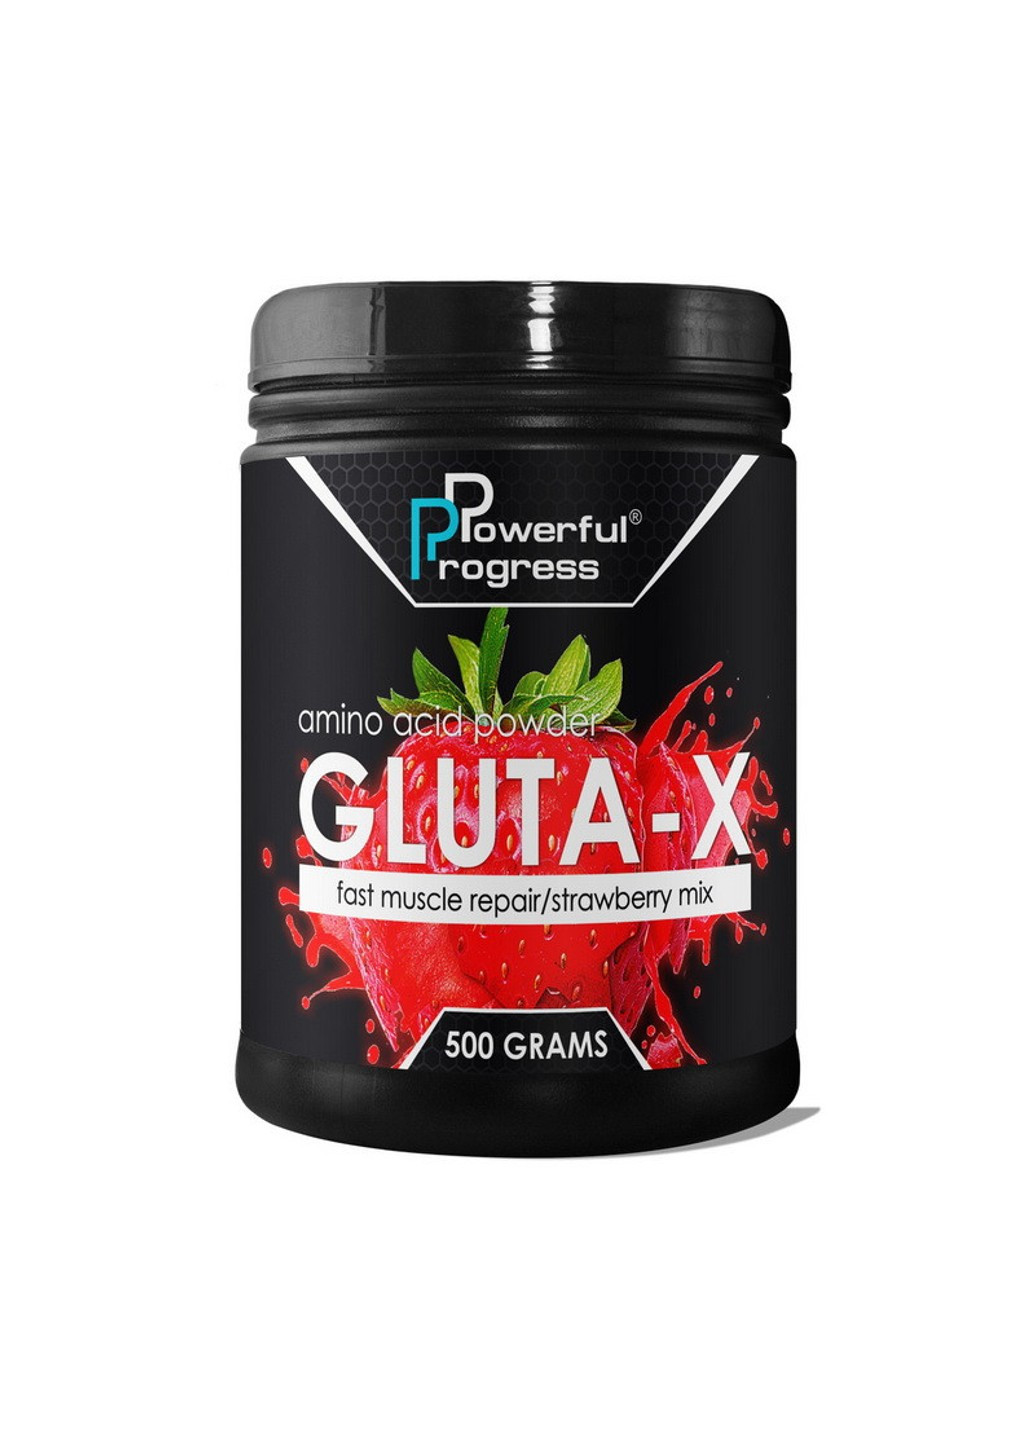 Глютамін Gluta-X (500 г) поверфул прогрес pineapple Powerful Progress (255362945)